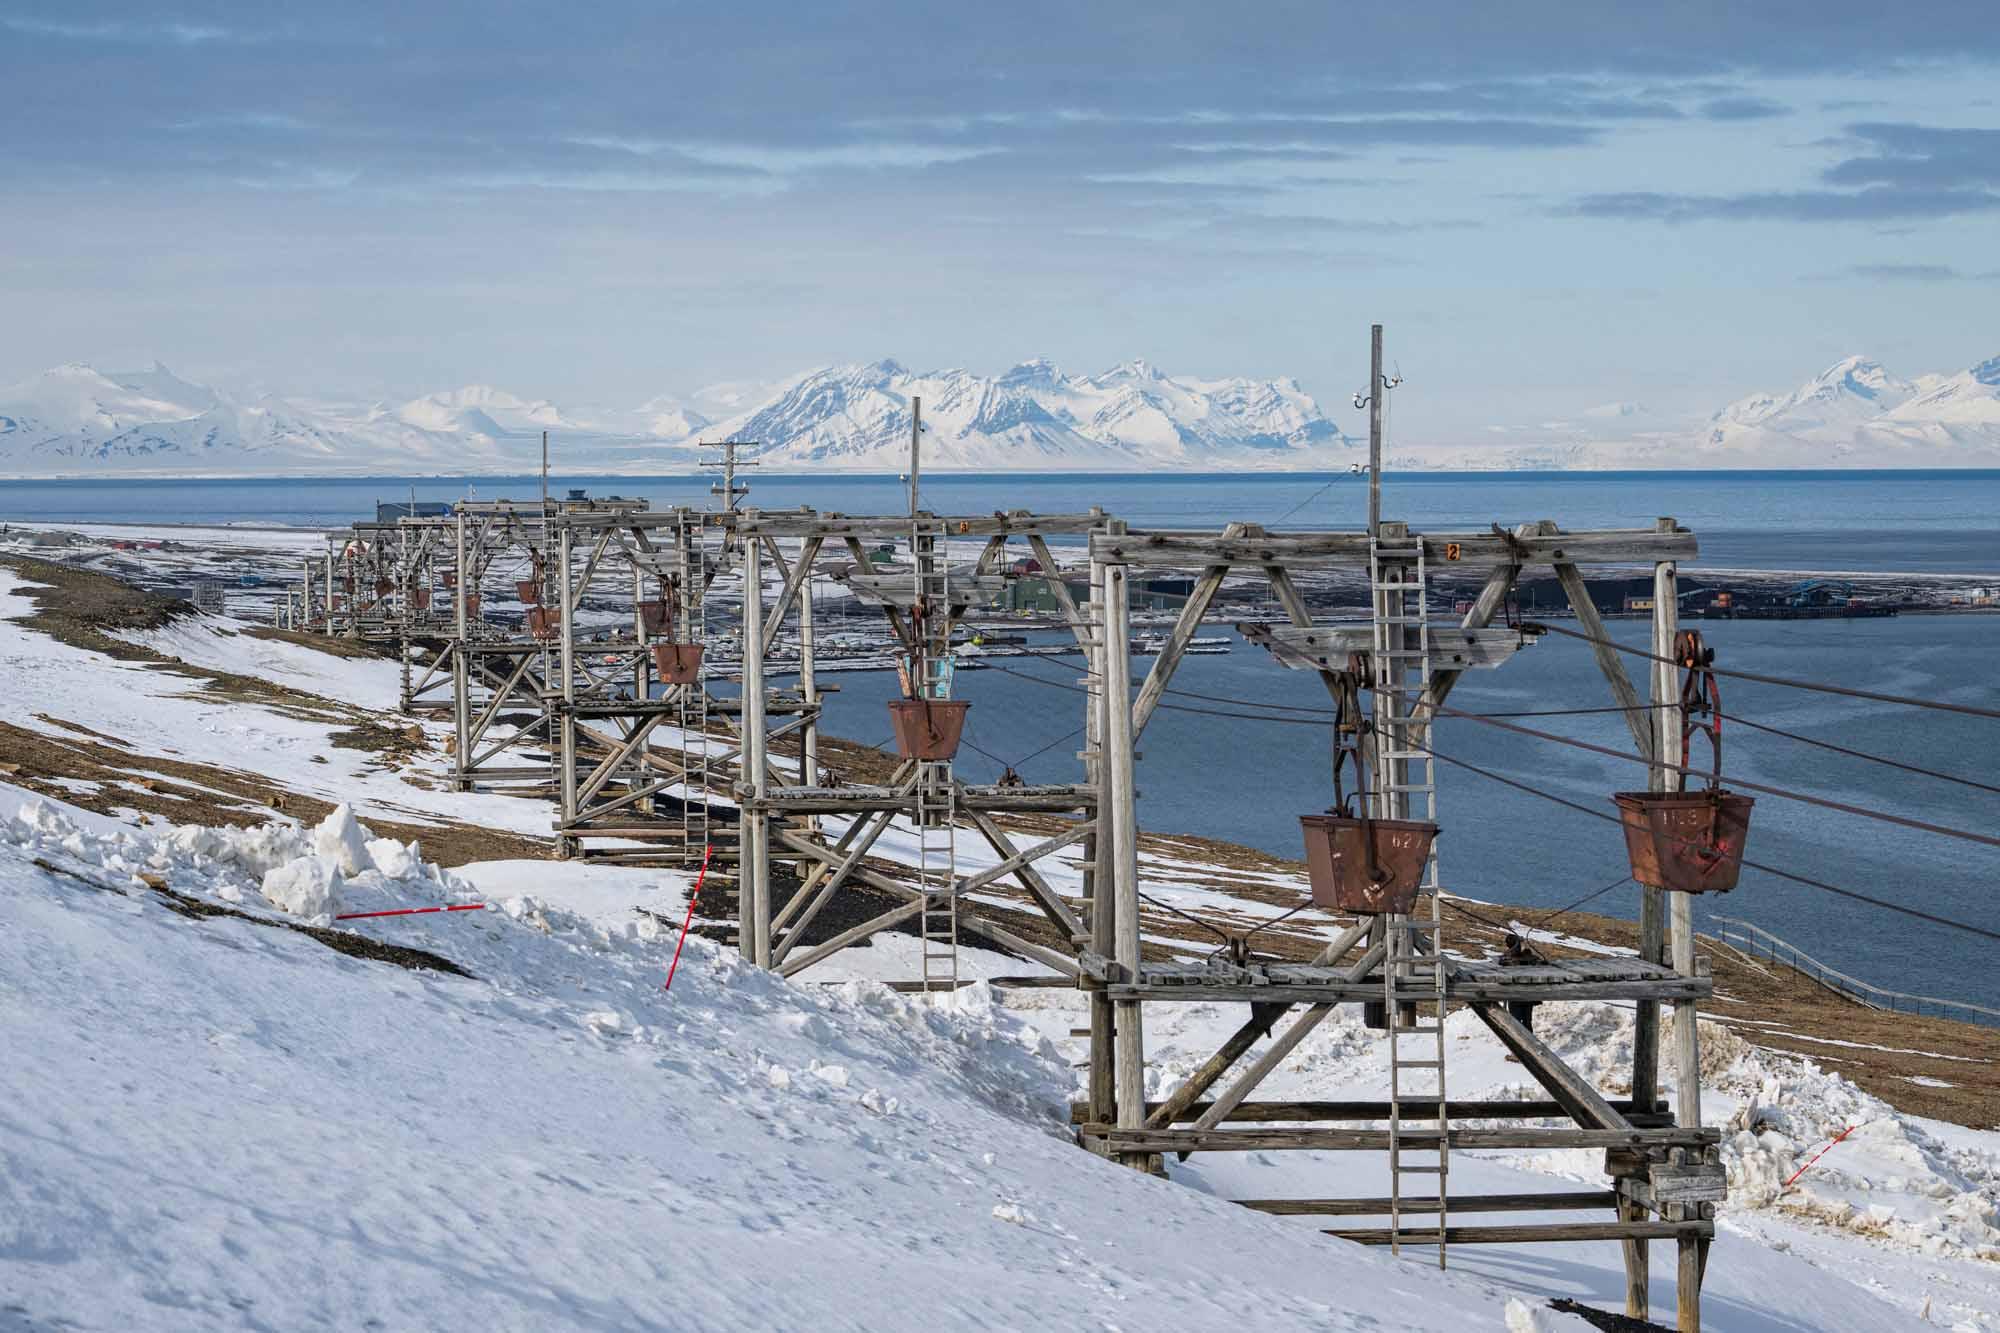 Des tours de convoyeur autrefois utilisées pour transporter le charbon des mines au port, sont photographiées à Longyearbyen, sur l'archipel du Svalbard, au nord de la Norvège. 